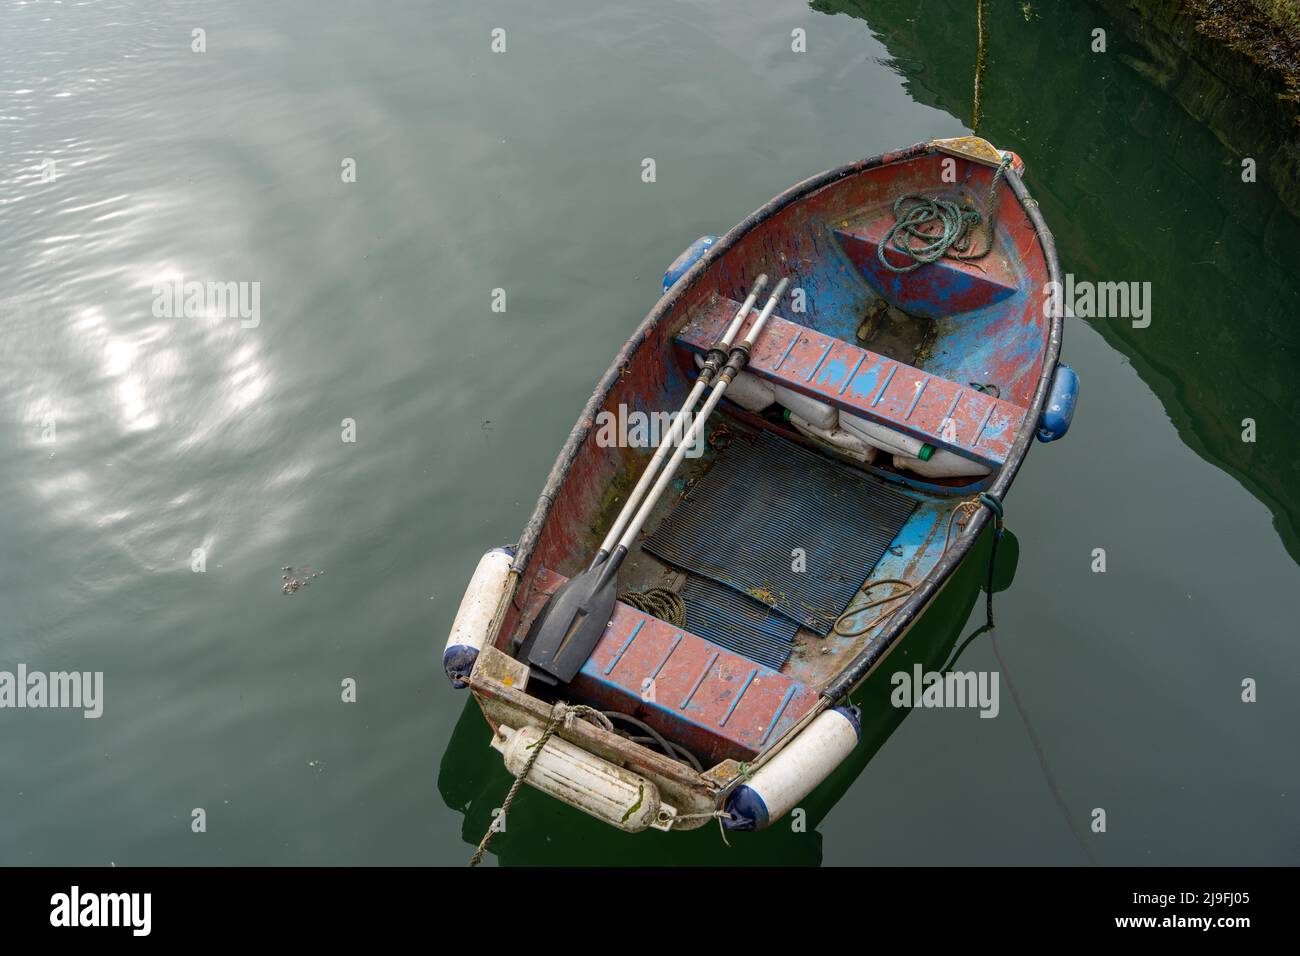 Ein kleines Boot oder Skiff, von oben gesehen, das zum Sculling oder Rudern in einem Hafen verwendet wird. Stockfoto